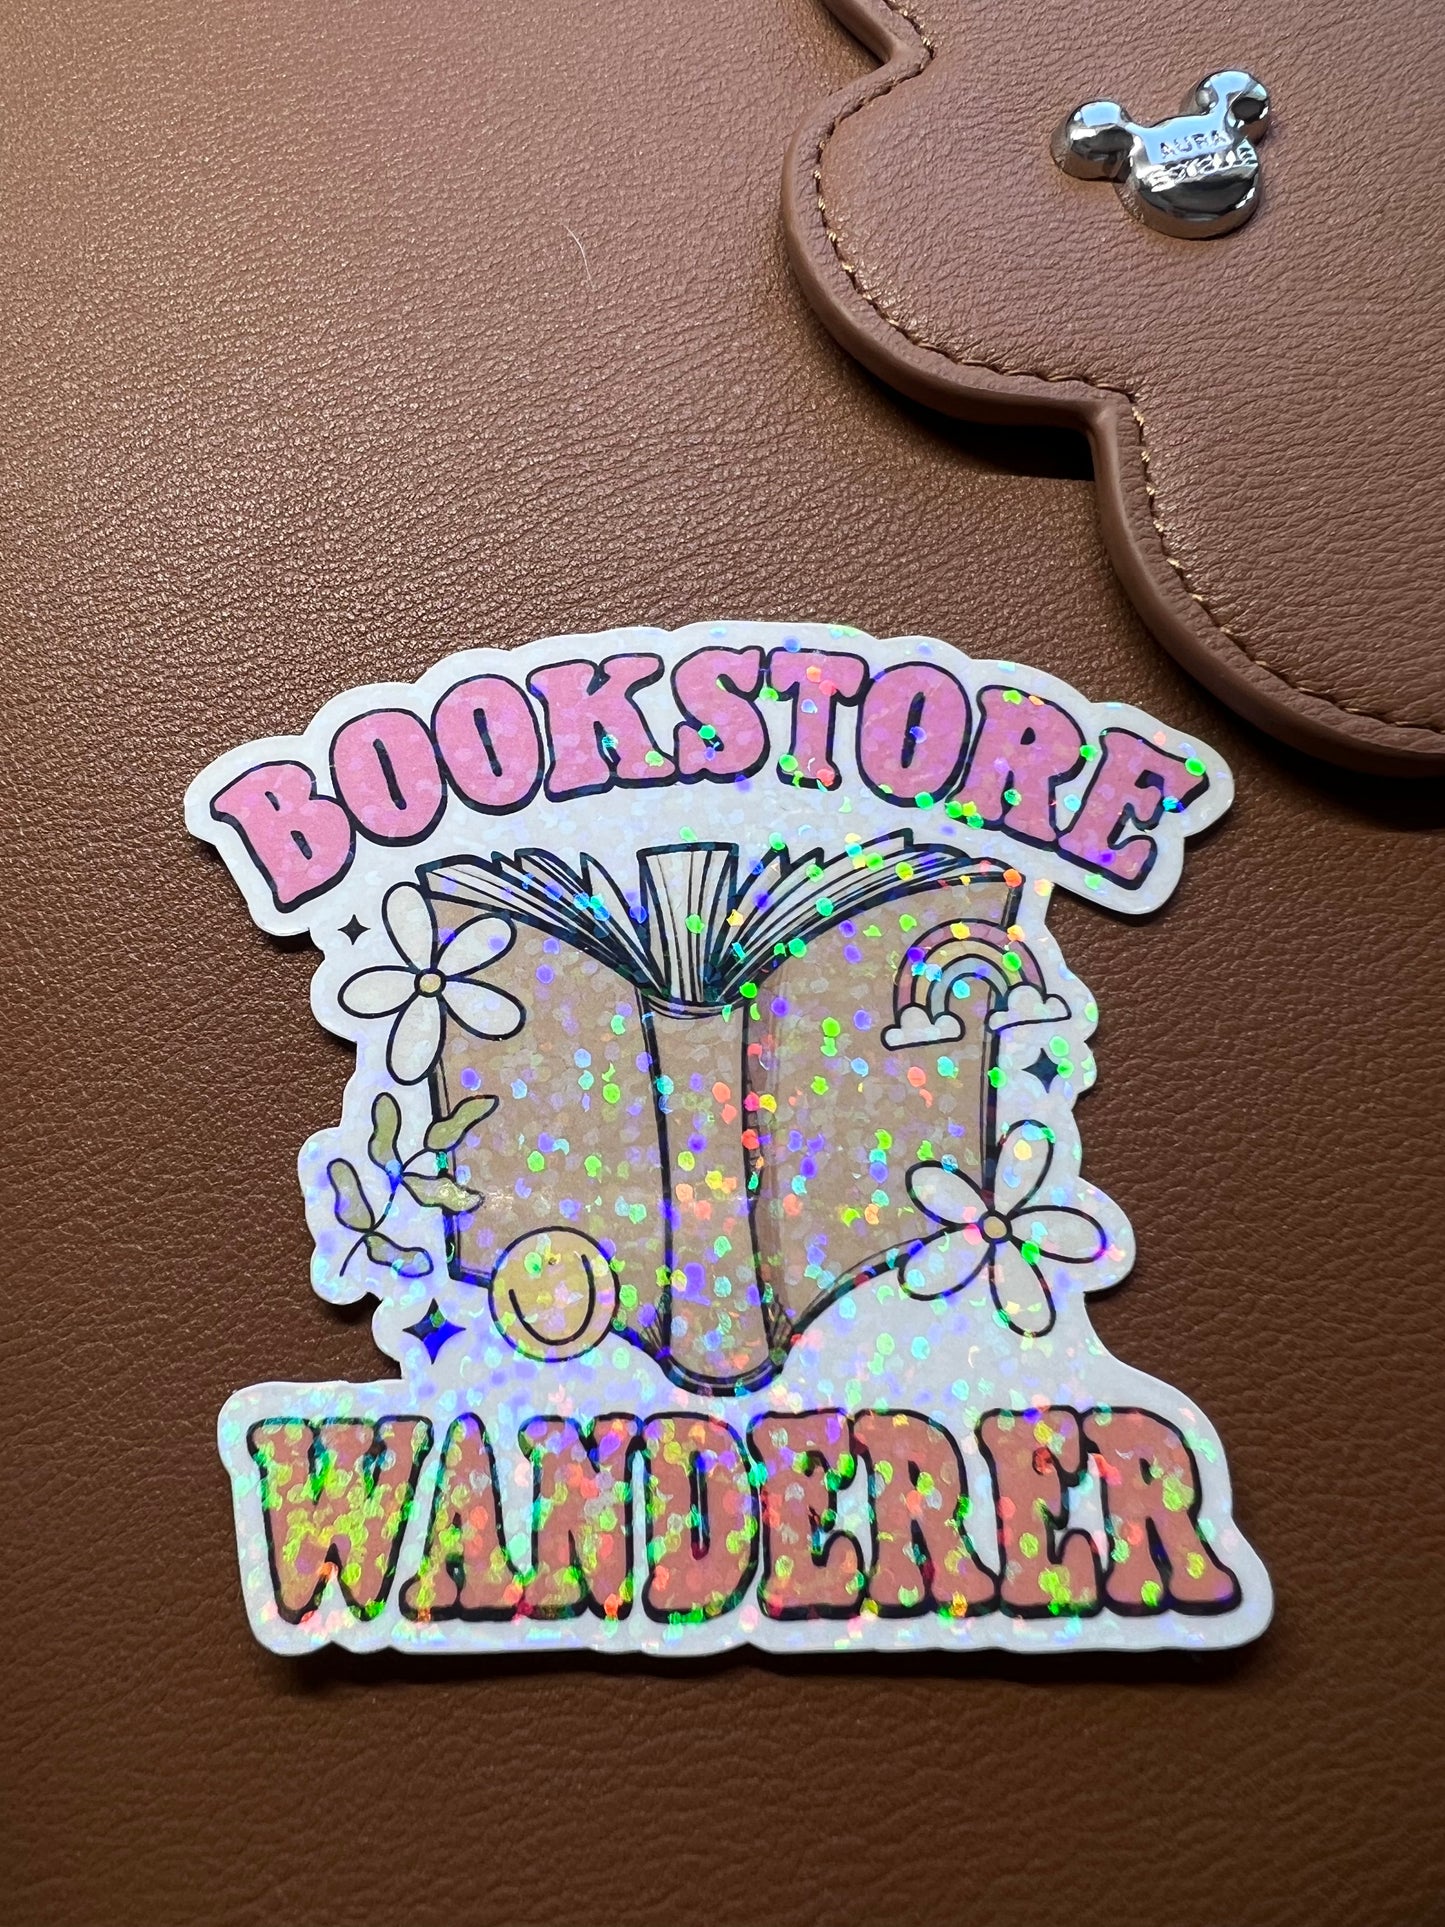 BookStore Wanderer Die Cut Sticker